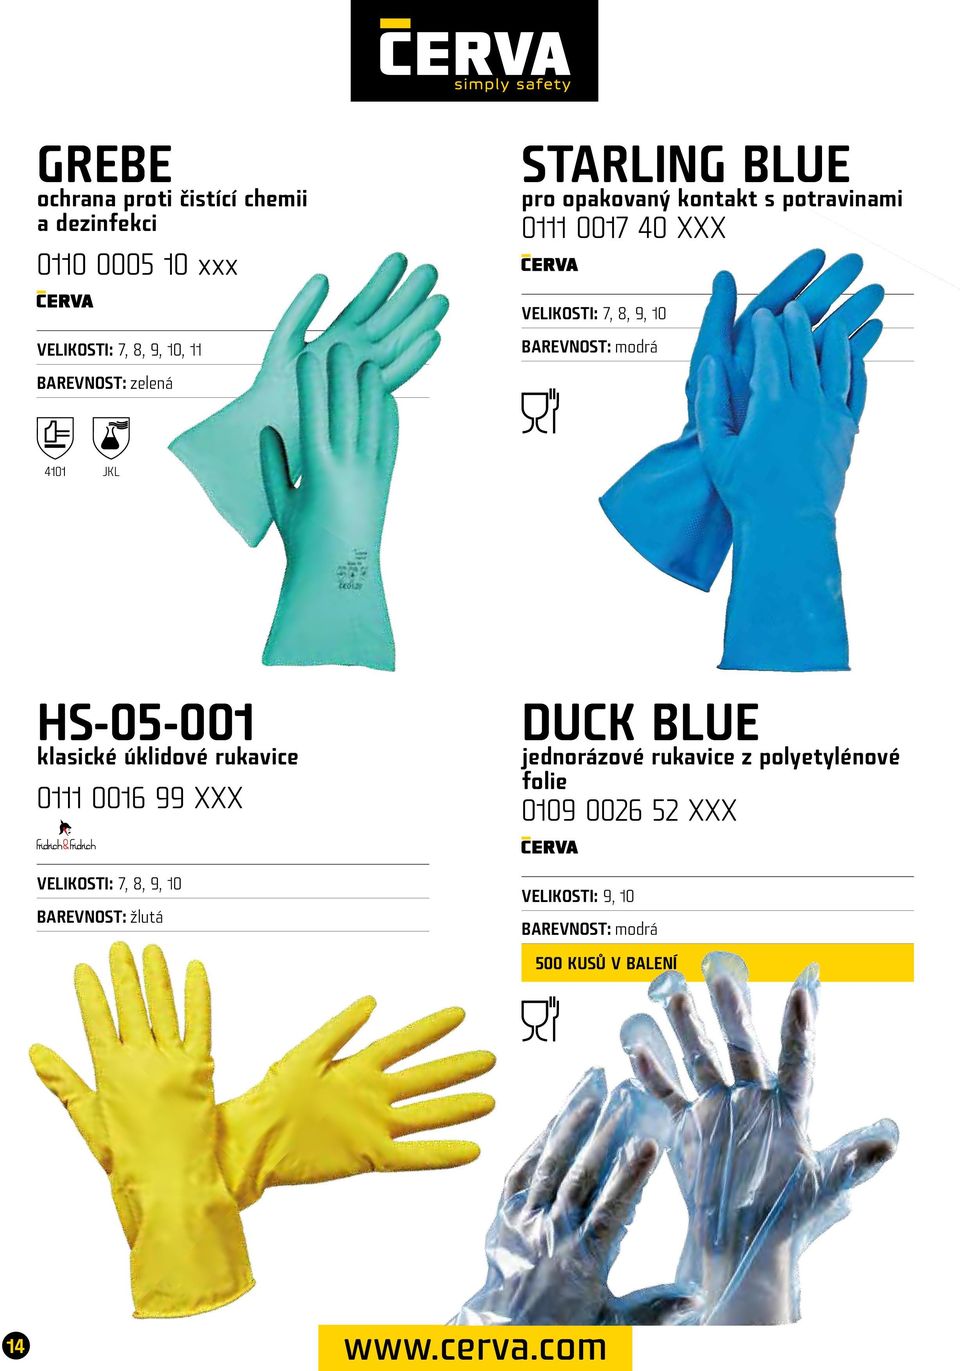 HS-05-001 klasické úklidové rukavice 0111 0016 99 XXX DUCK BLUE jednorázové rukavice z polyetylénové folie 0109